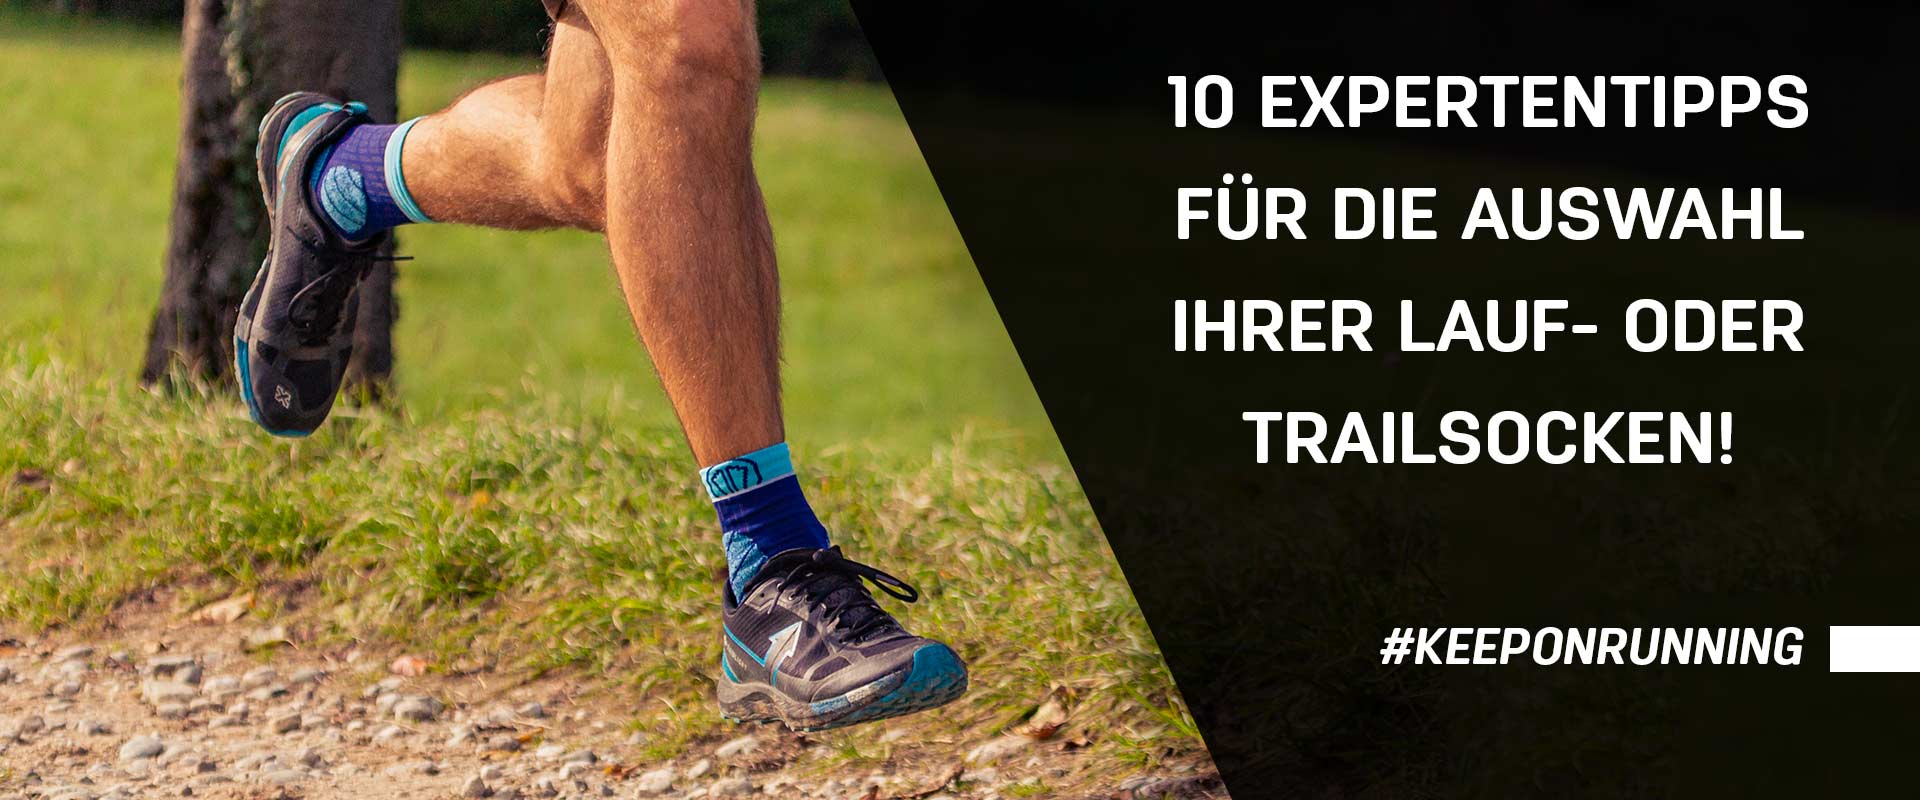 10 Expertentipps für die Auswahl Ihrer Lauf- oder Trailsocken!